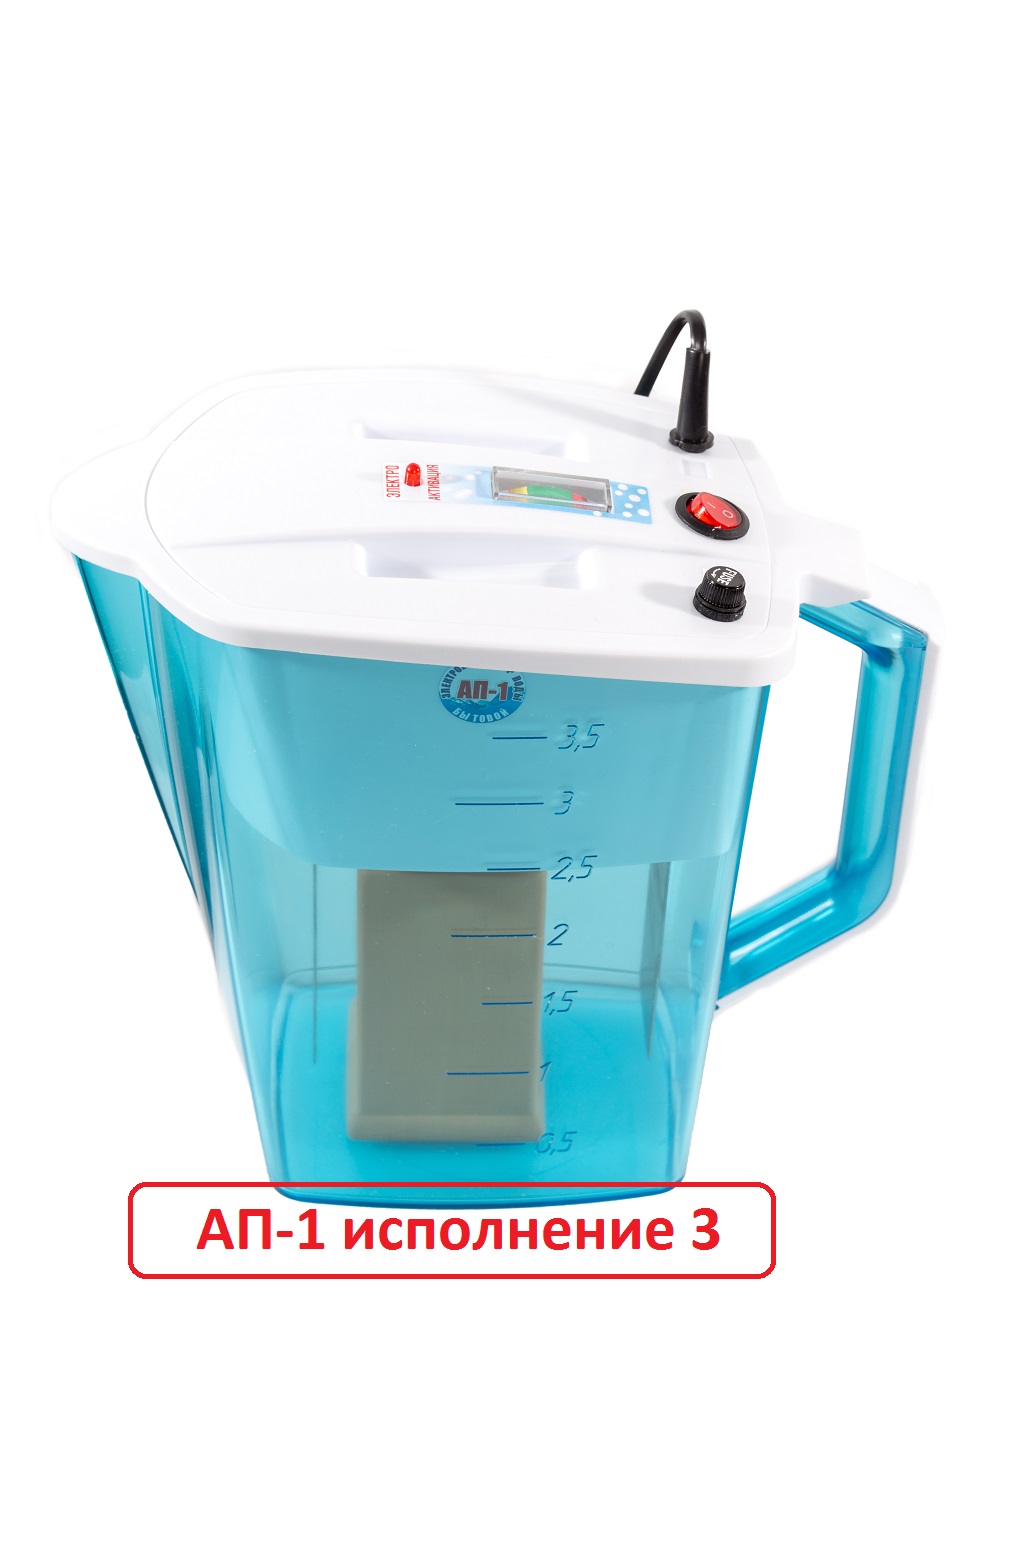 Живая и мертвая вода активатор АП-1 исполнение 1, Беларусь